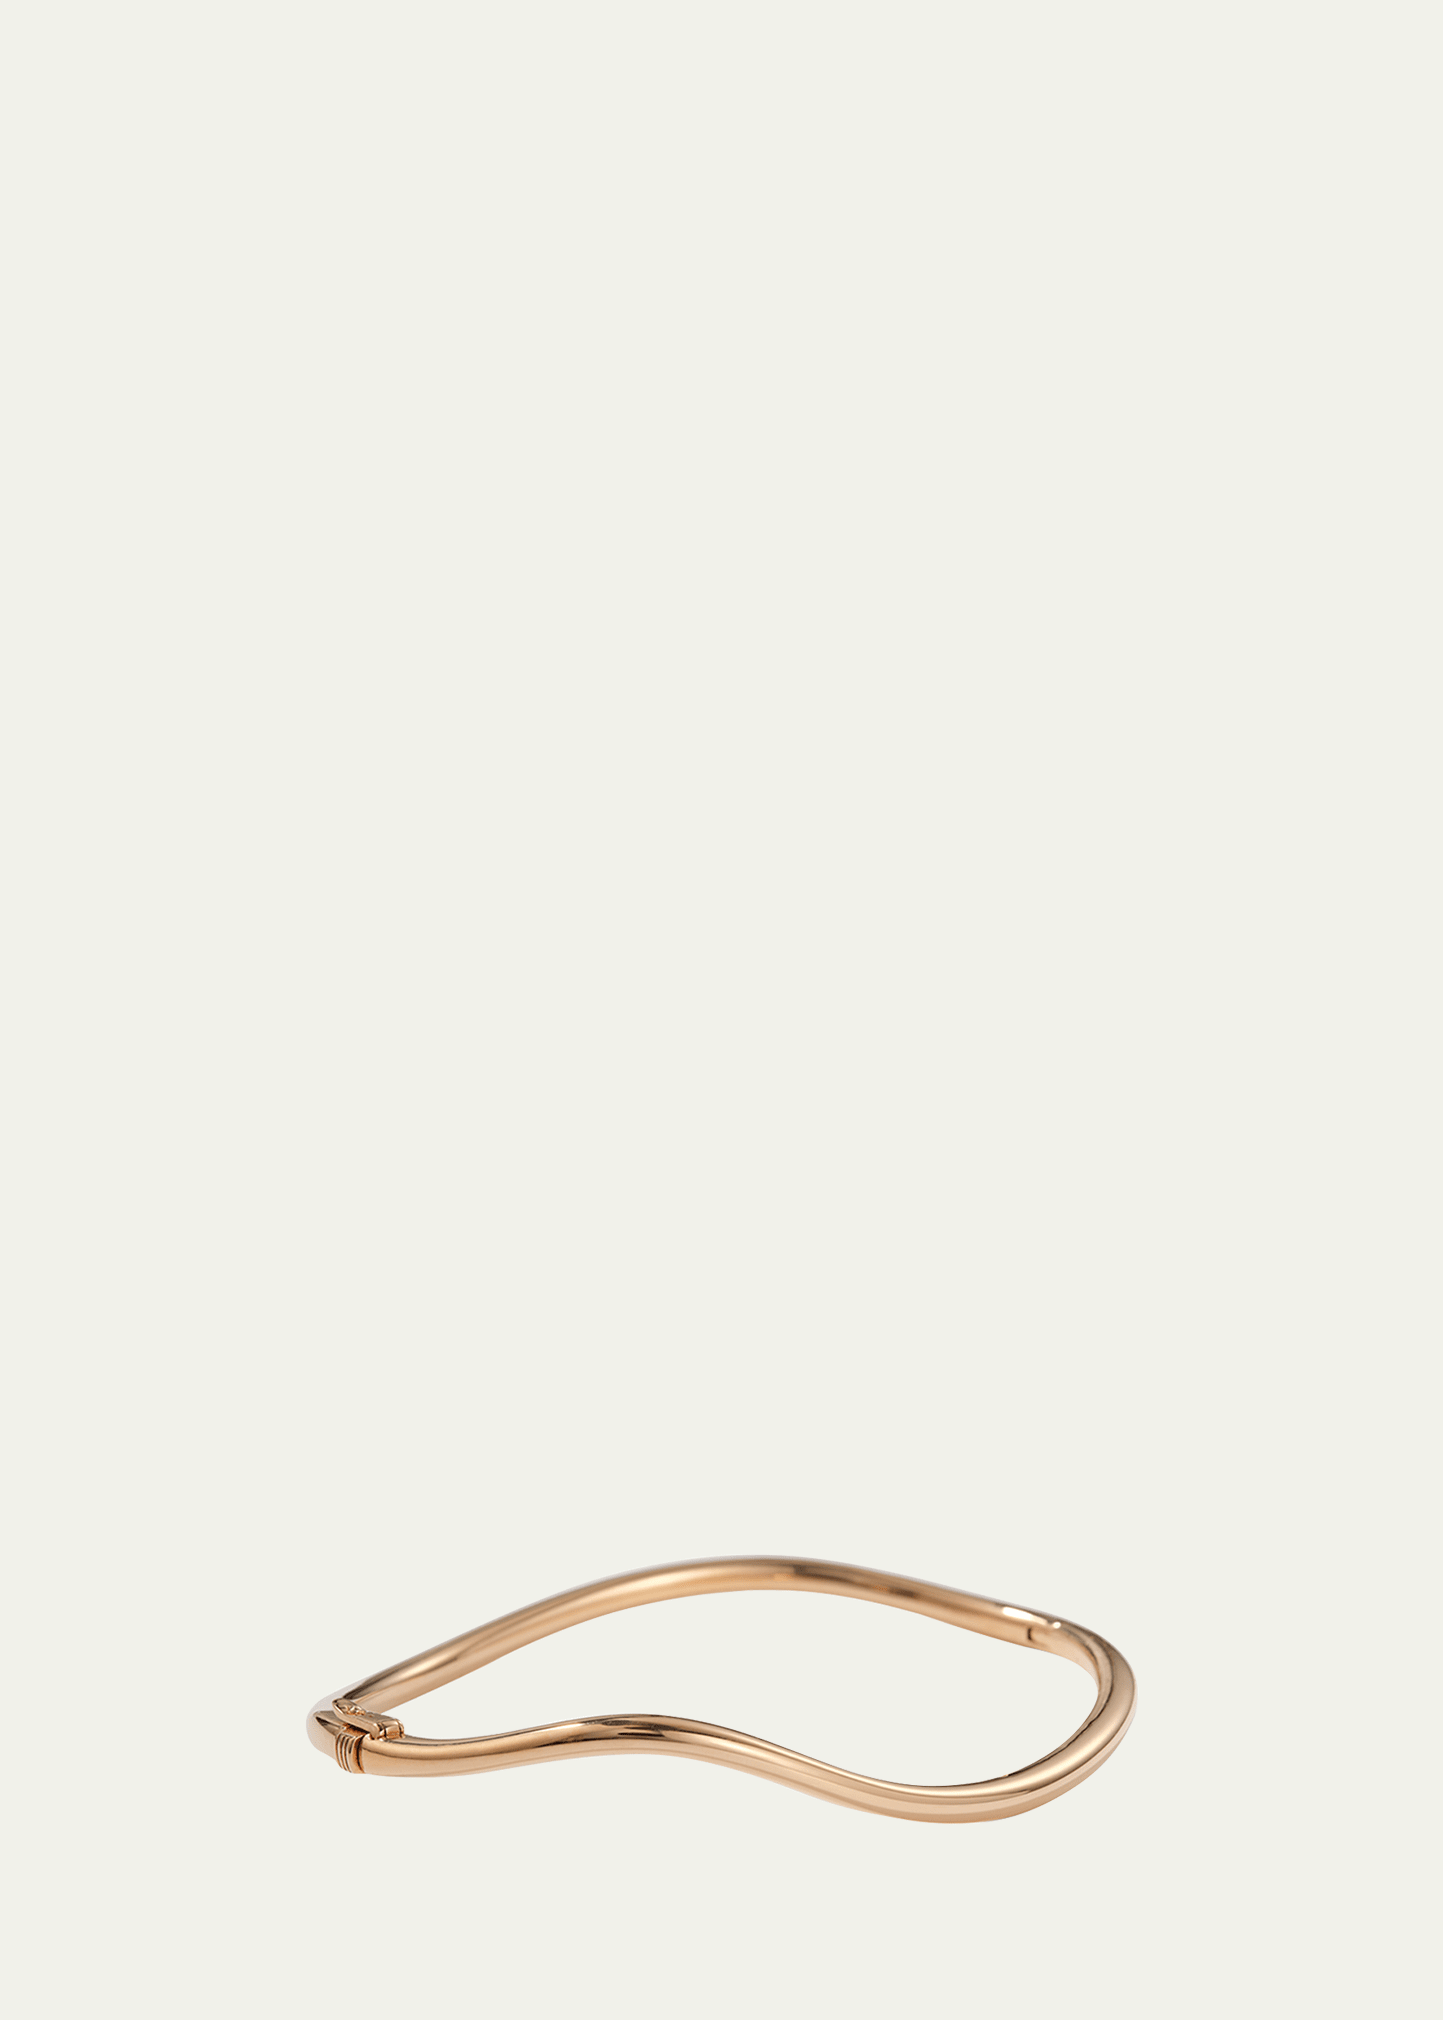 20K Rose Gold Twisted Bracelet